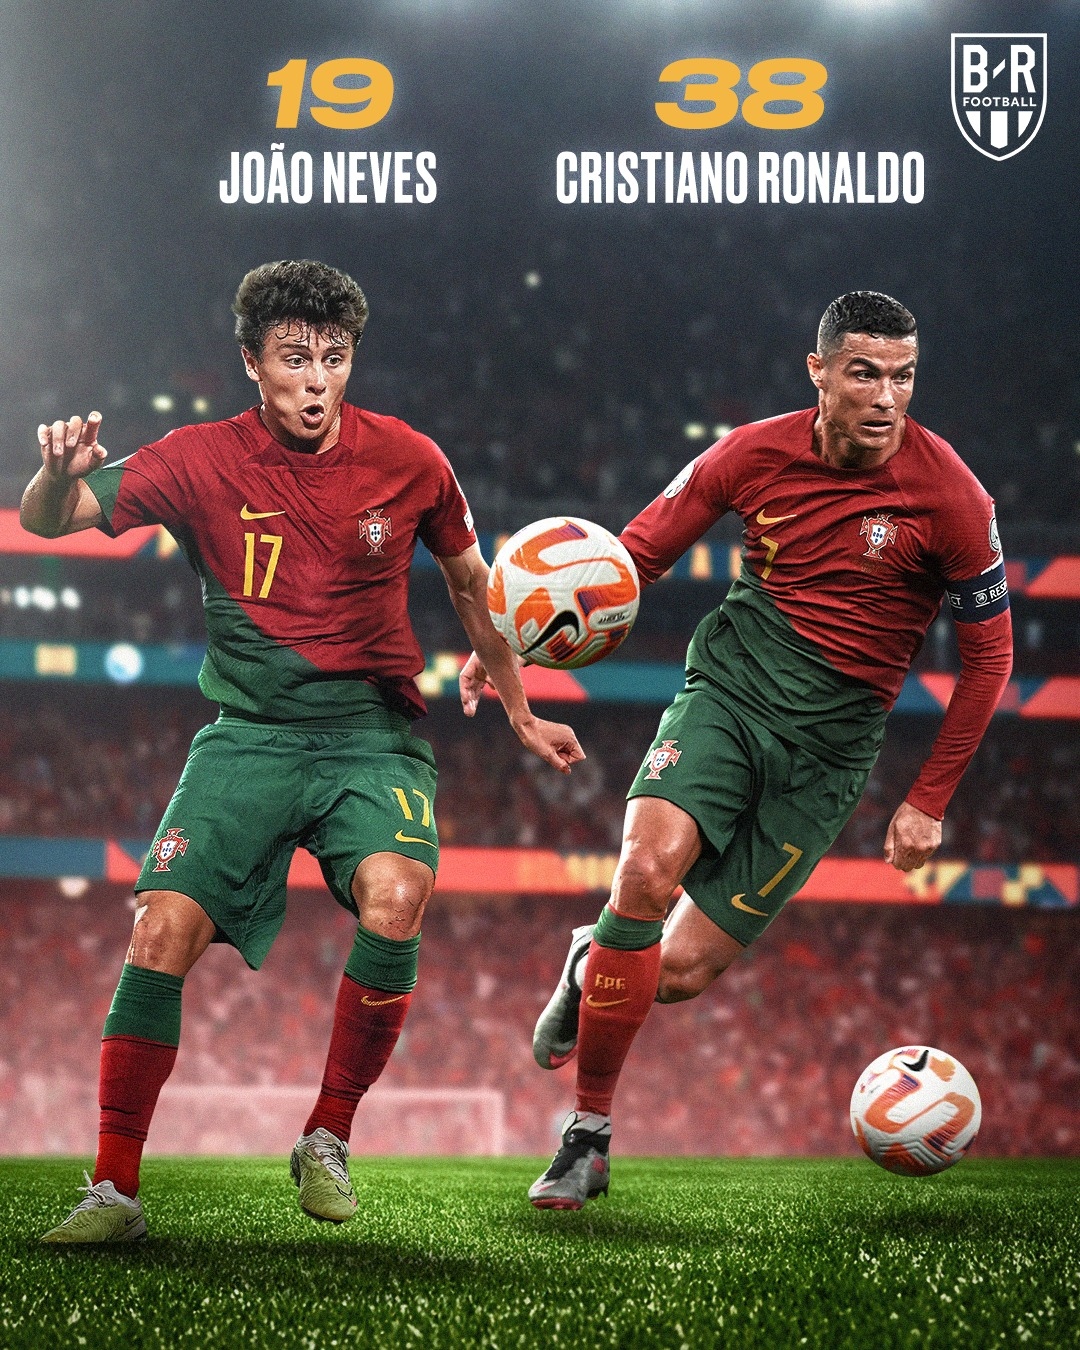 Cristiano Ronaldo - Joao Neves và những cặp cầu thủ "chú - cháu" ở cấp độ ĐTQG